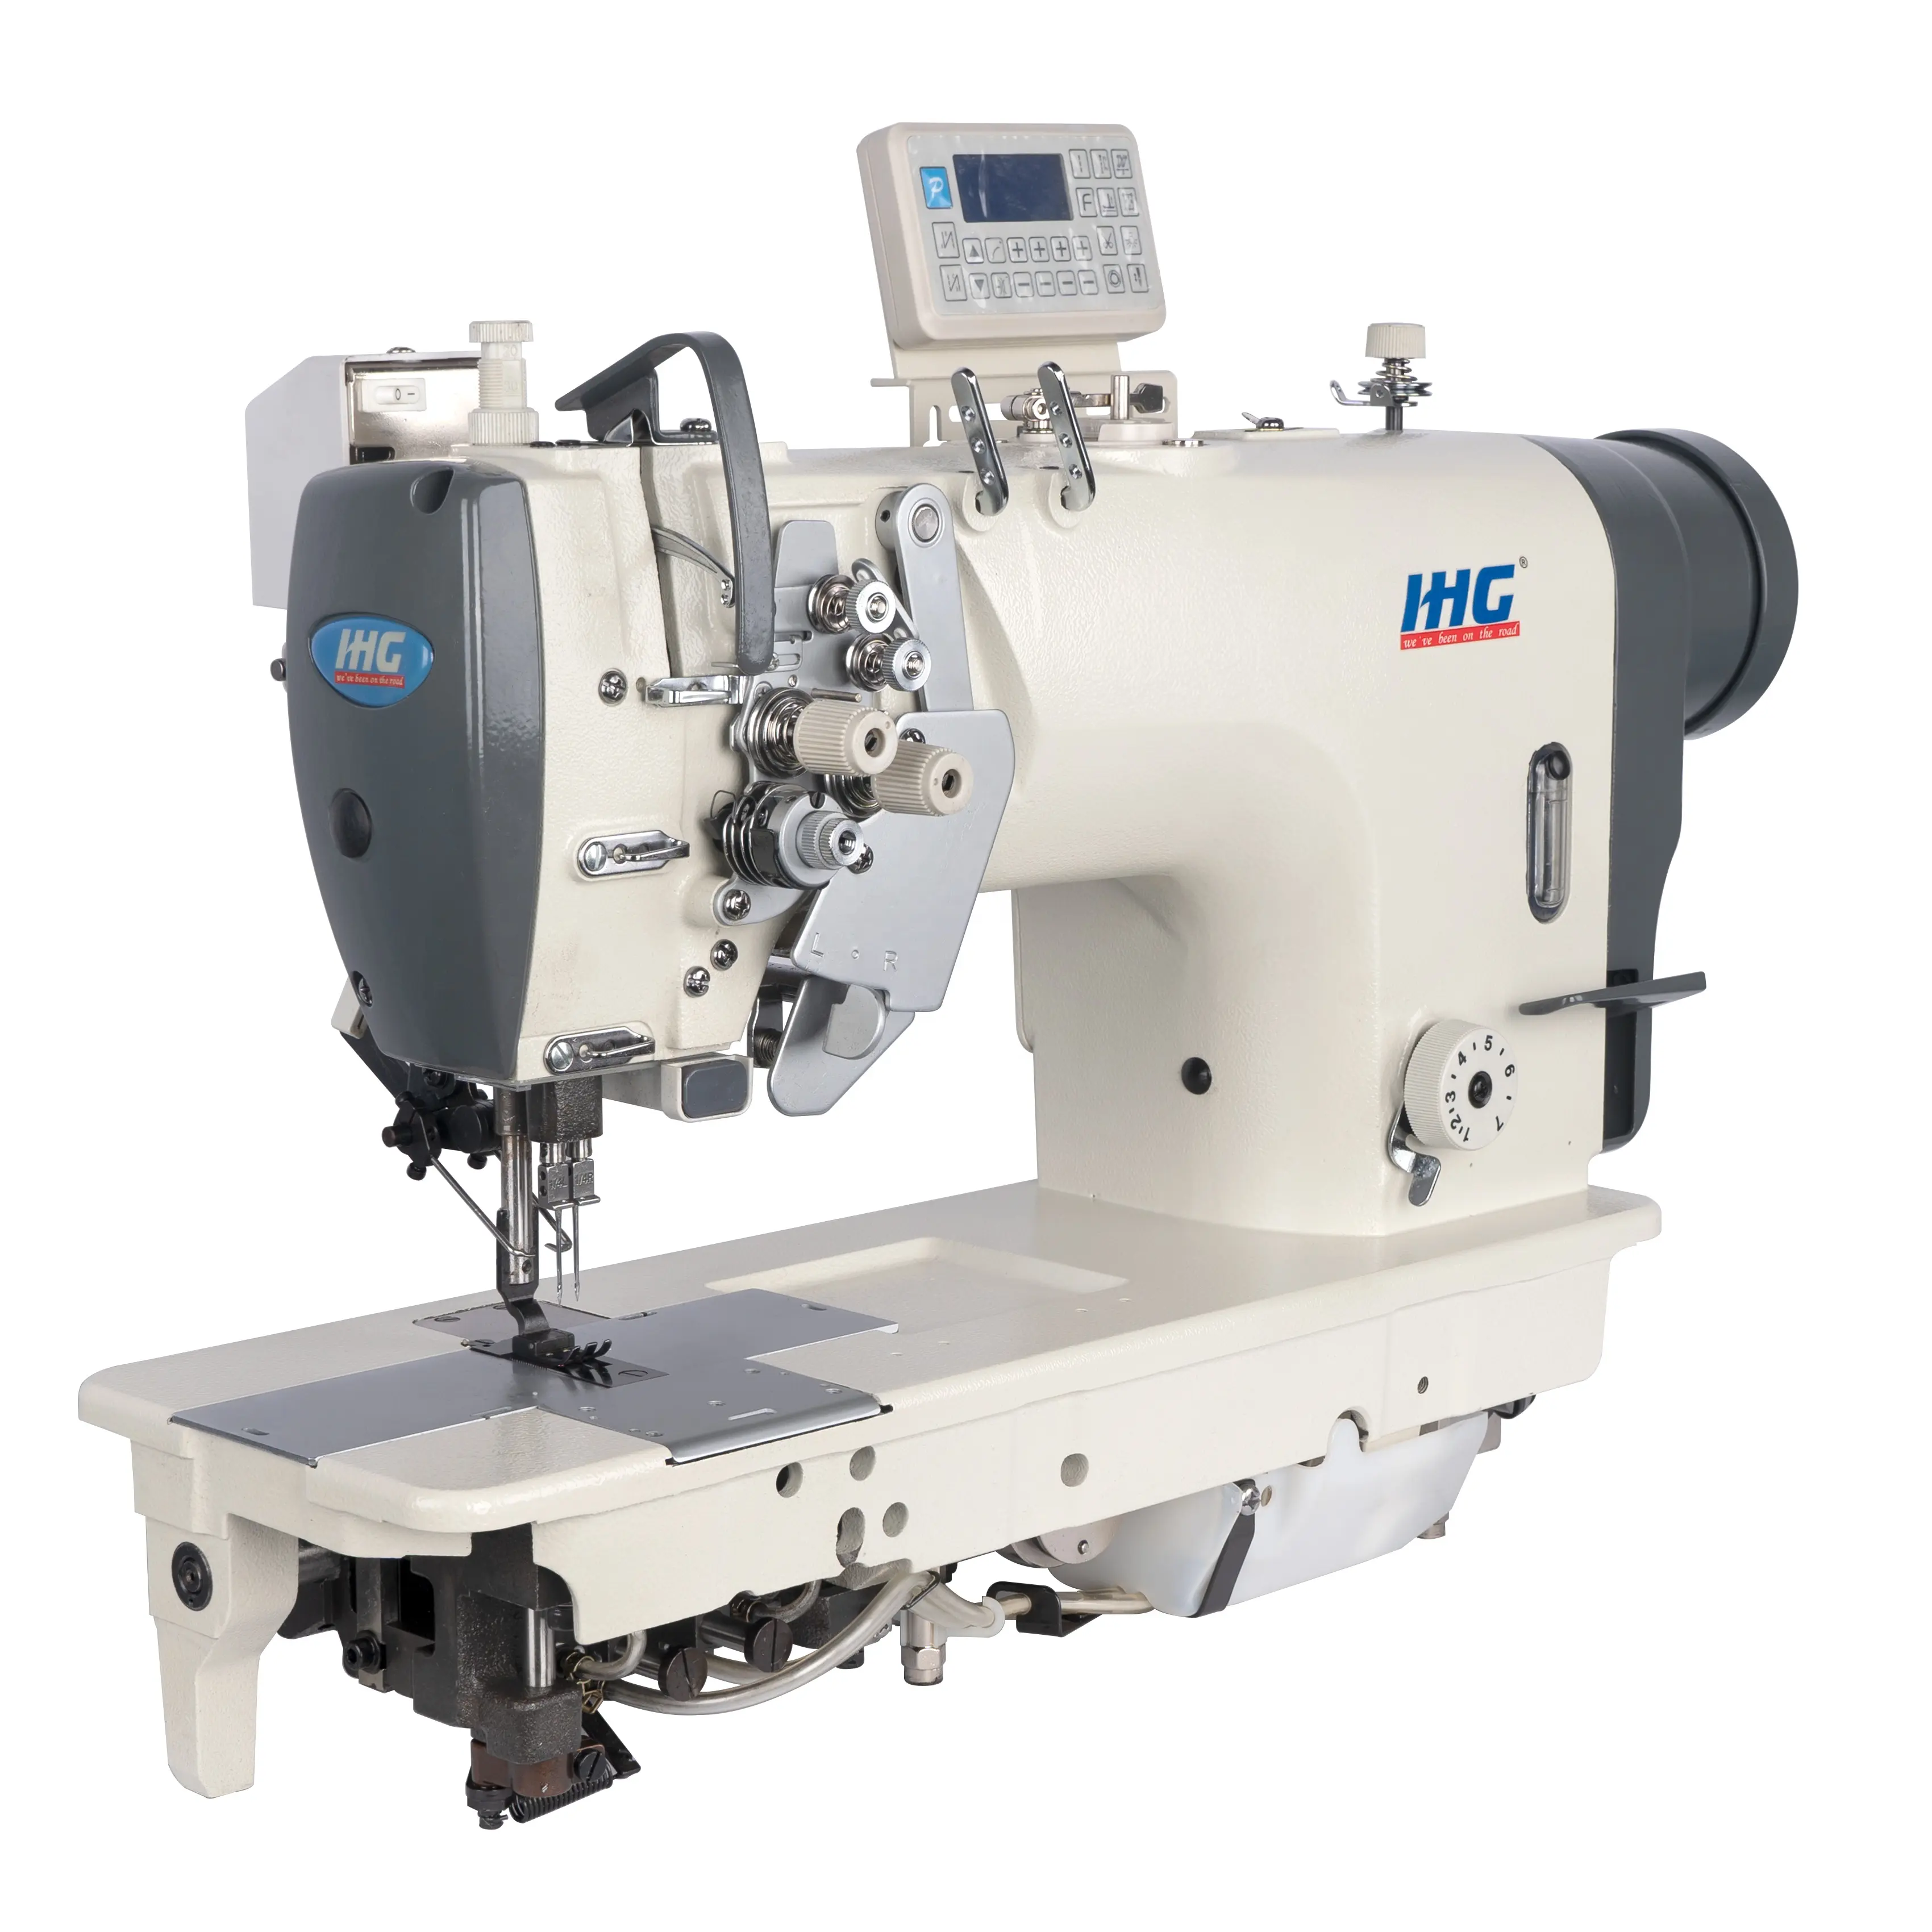 Máquina de coser Industrial IHG, máquina de coser de punto de bloqueo doble, para tiendas de ropa